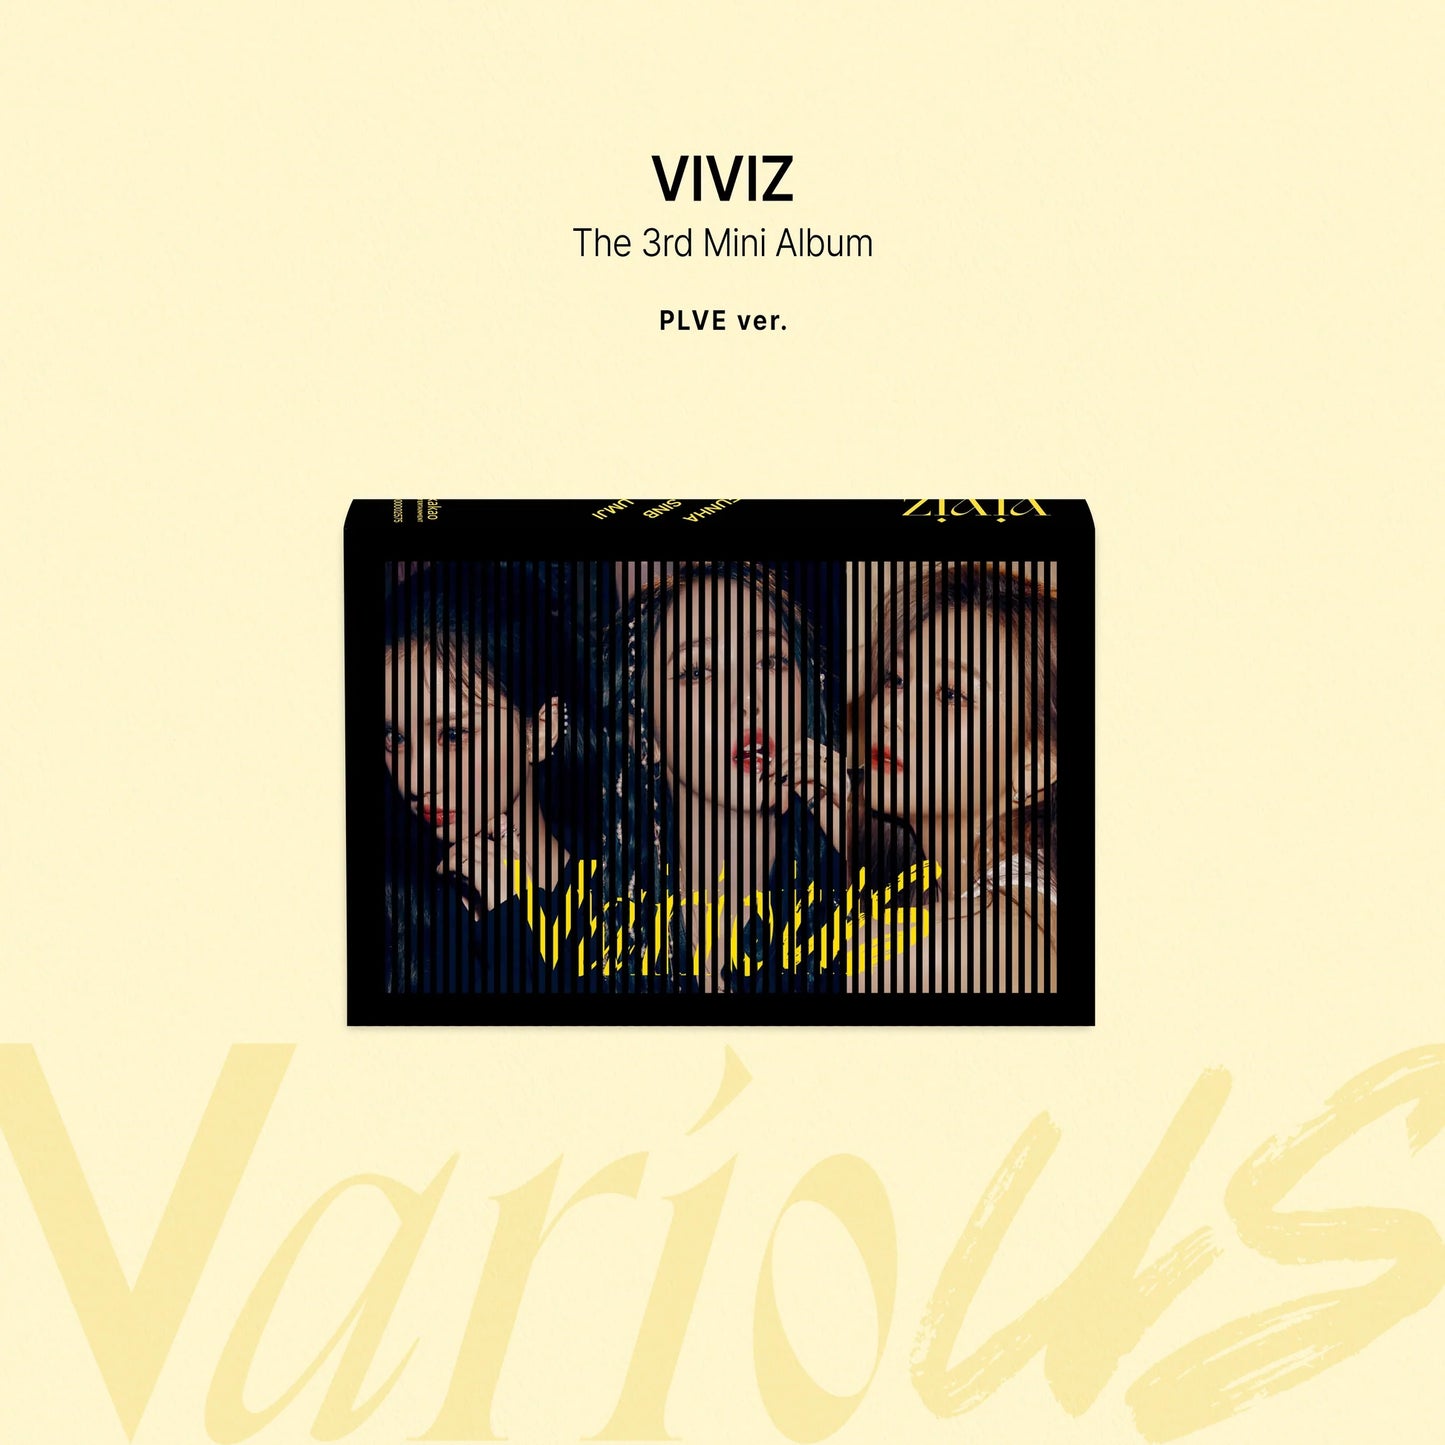 Viviz - VarioUS (PLVE Ver.)